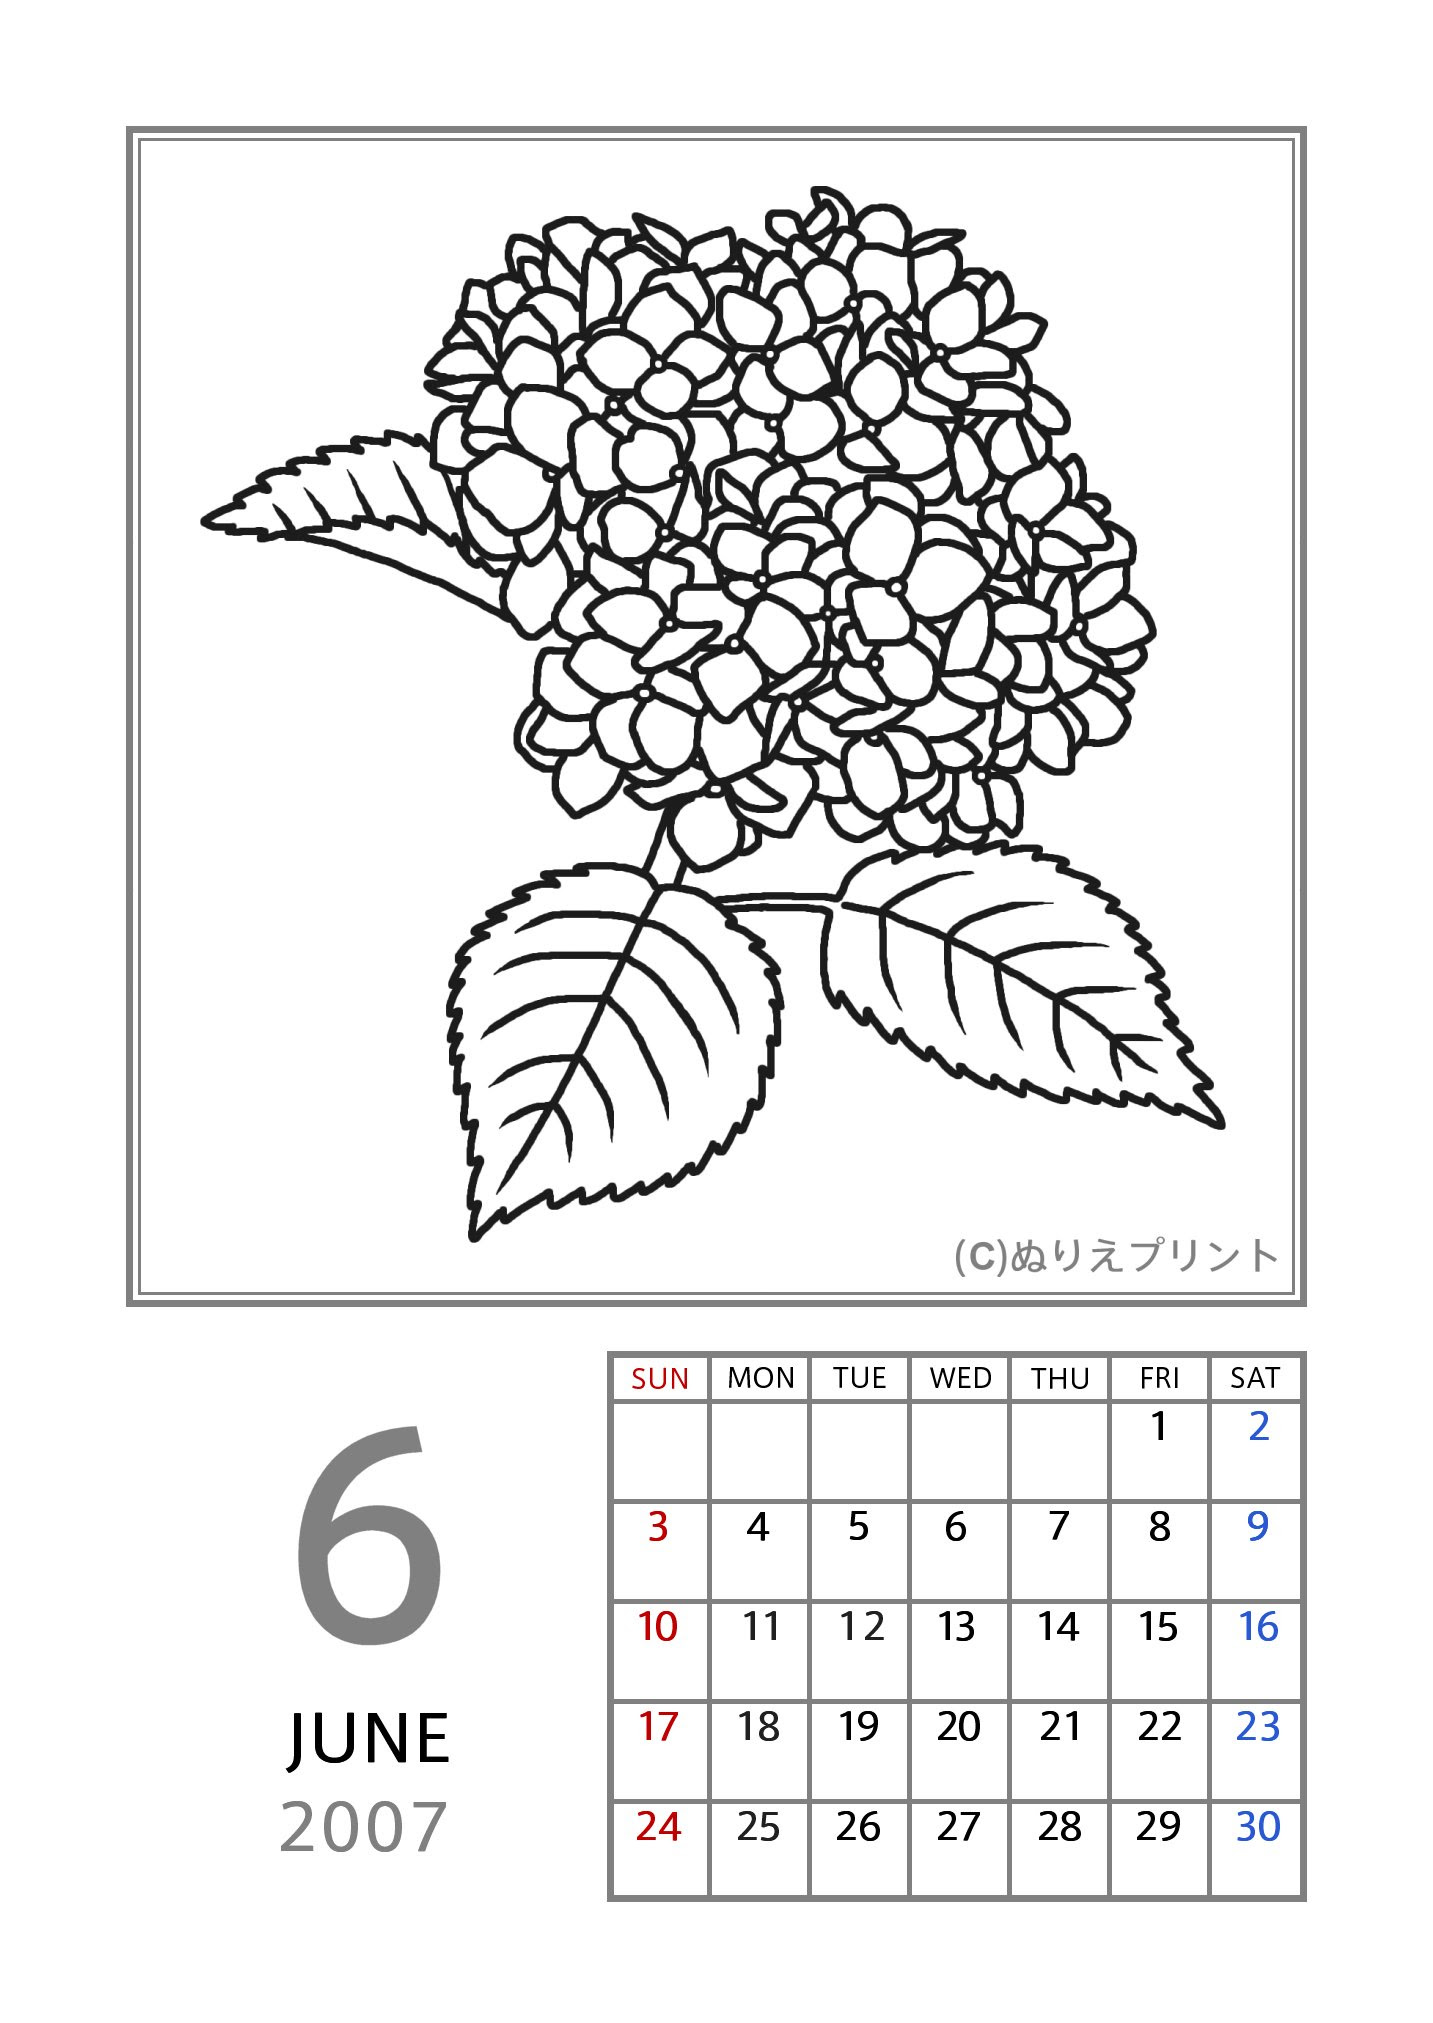 6月 アジサイ 紫陽花 黒 07 平成19年 花のぬりえカレンダー 無料 フリー ぬりえプリント